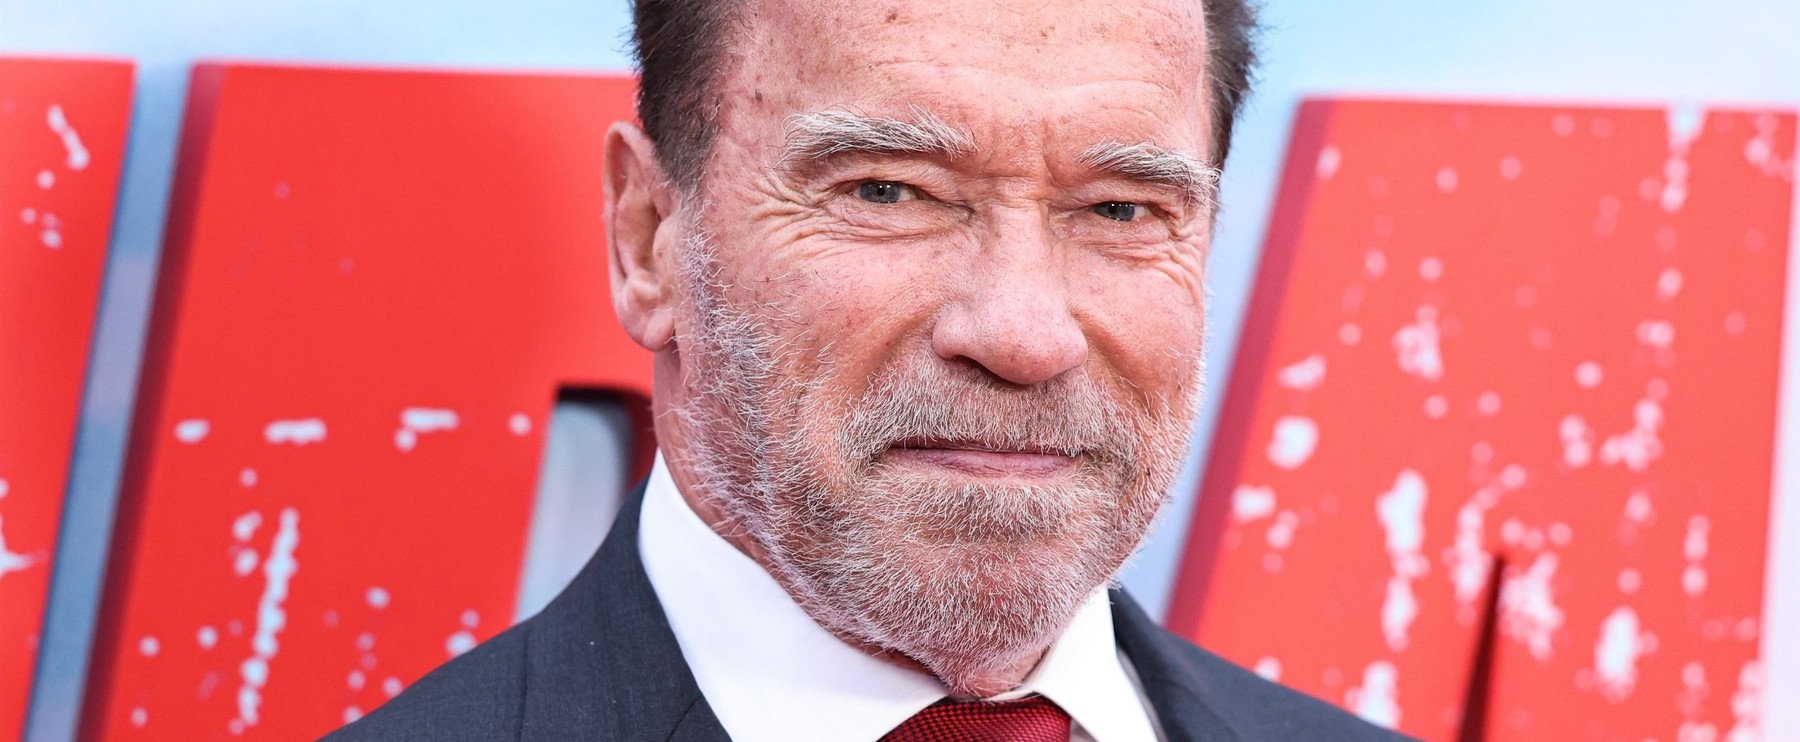 Képkvíz: felismered Arnold Schwarzenegger filmjeit egyetlen képkockáról? - 2. rész